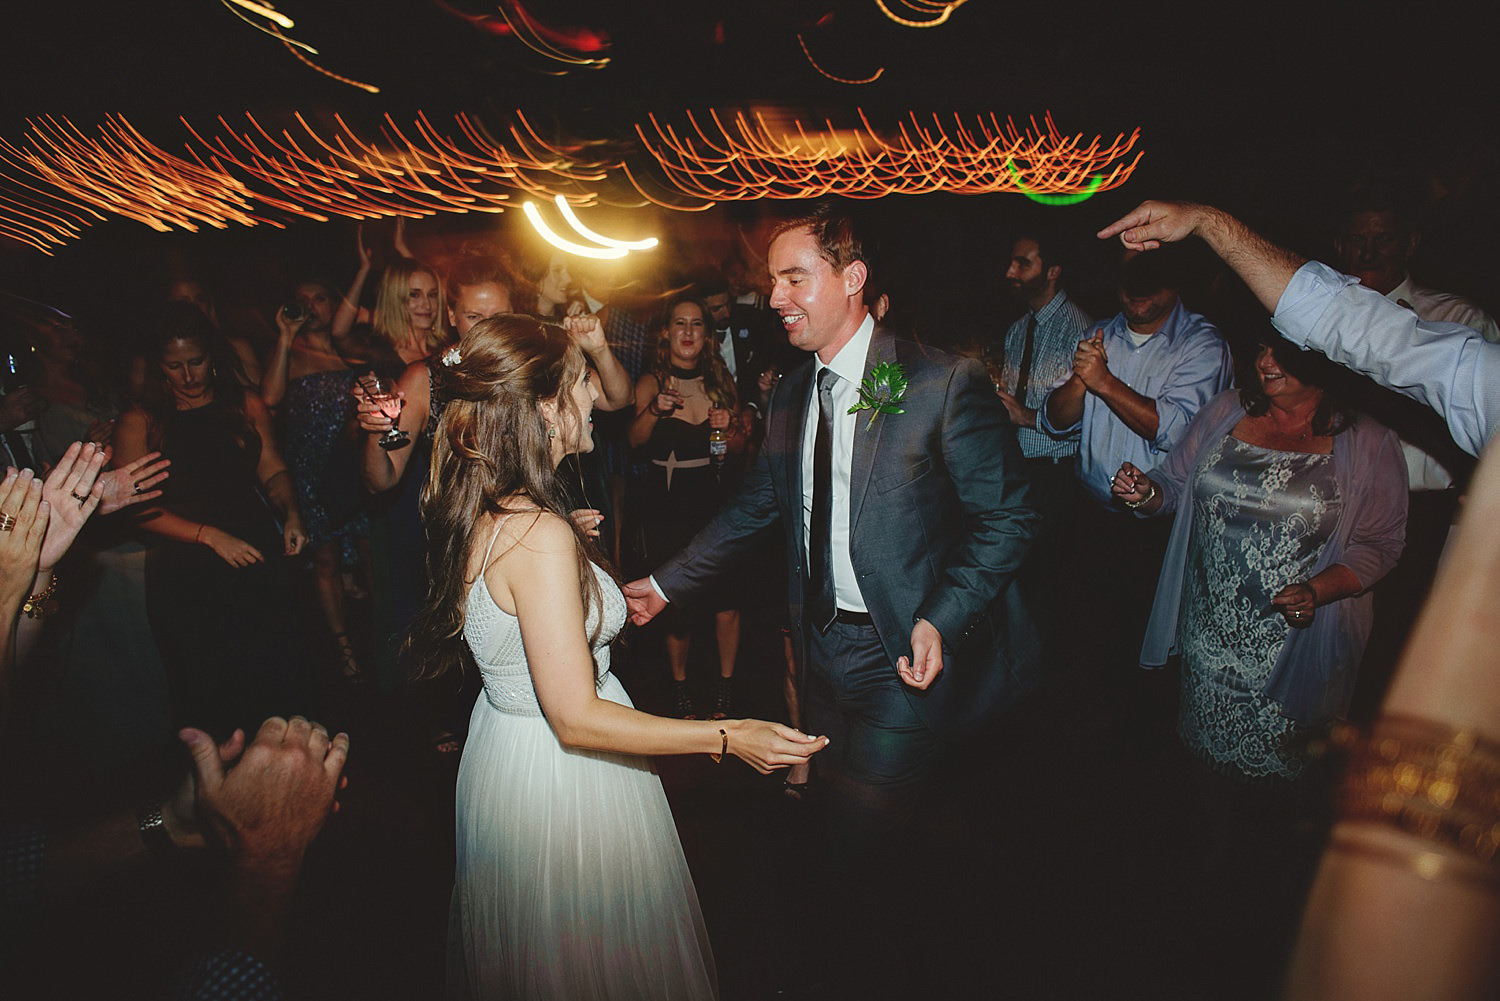 dubsbread wedding reception:  fun dancing